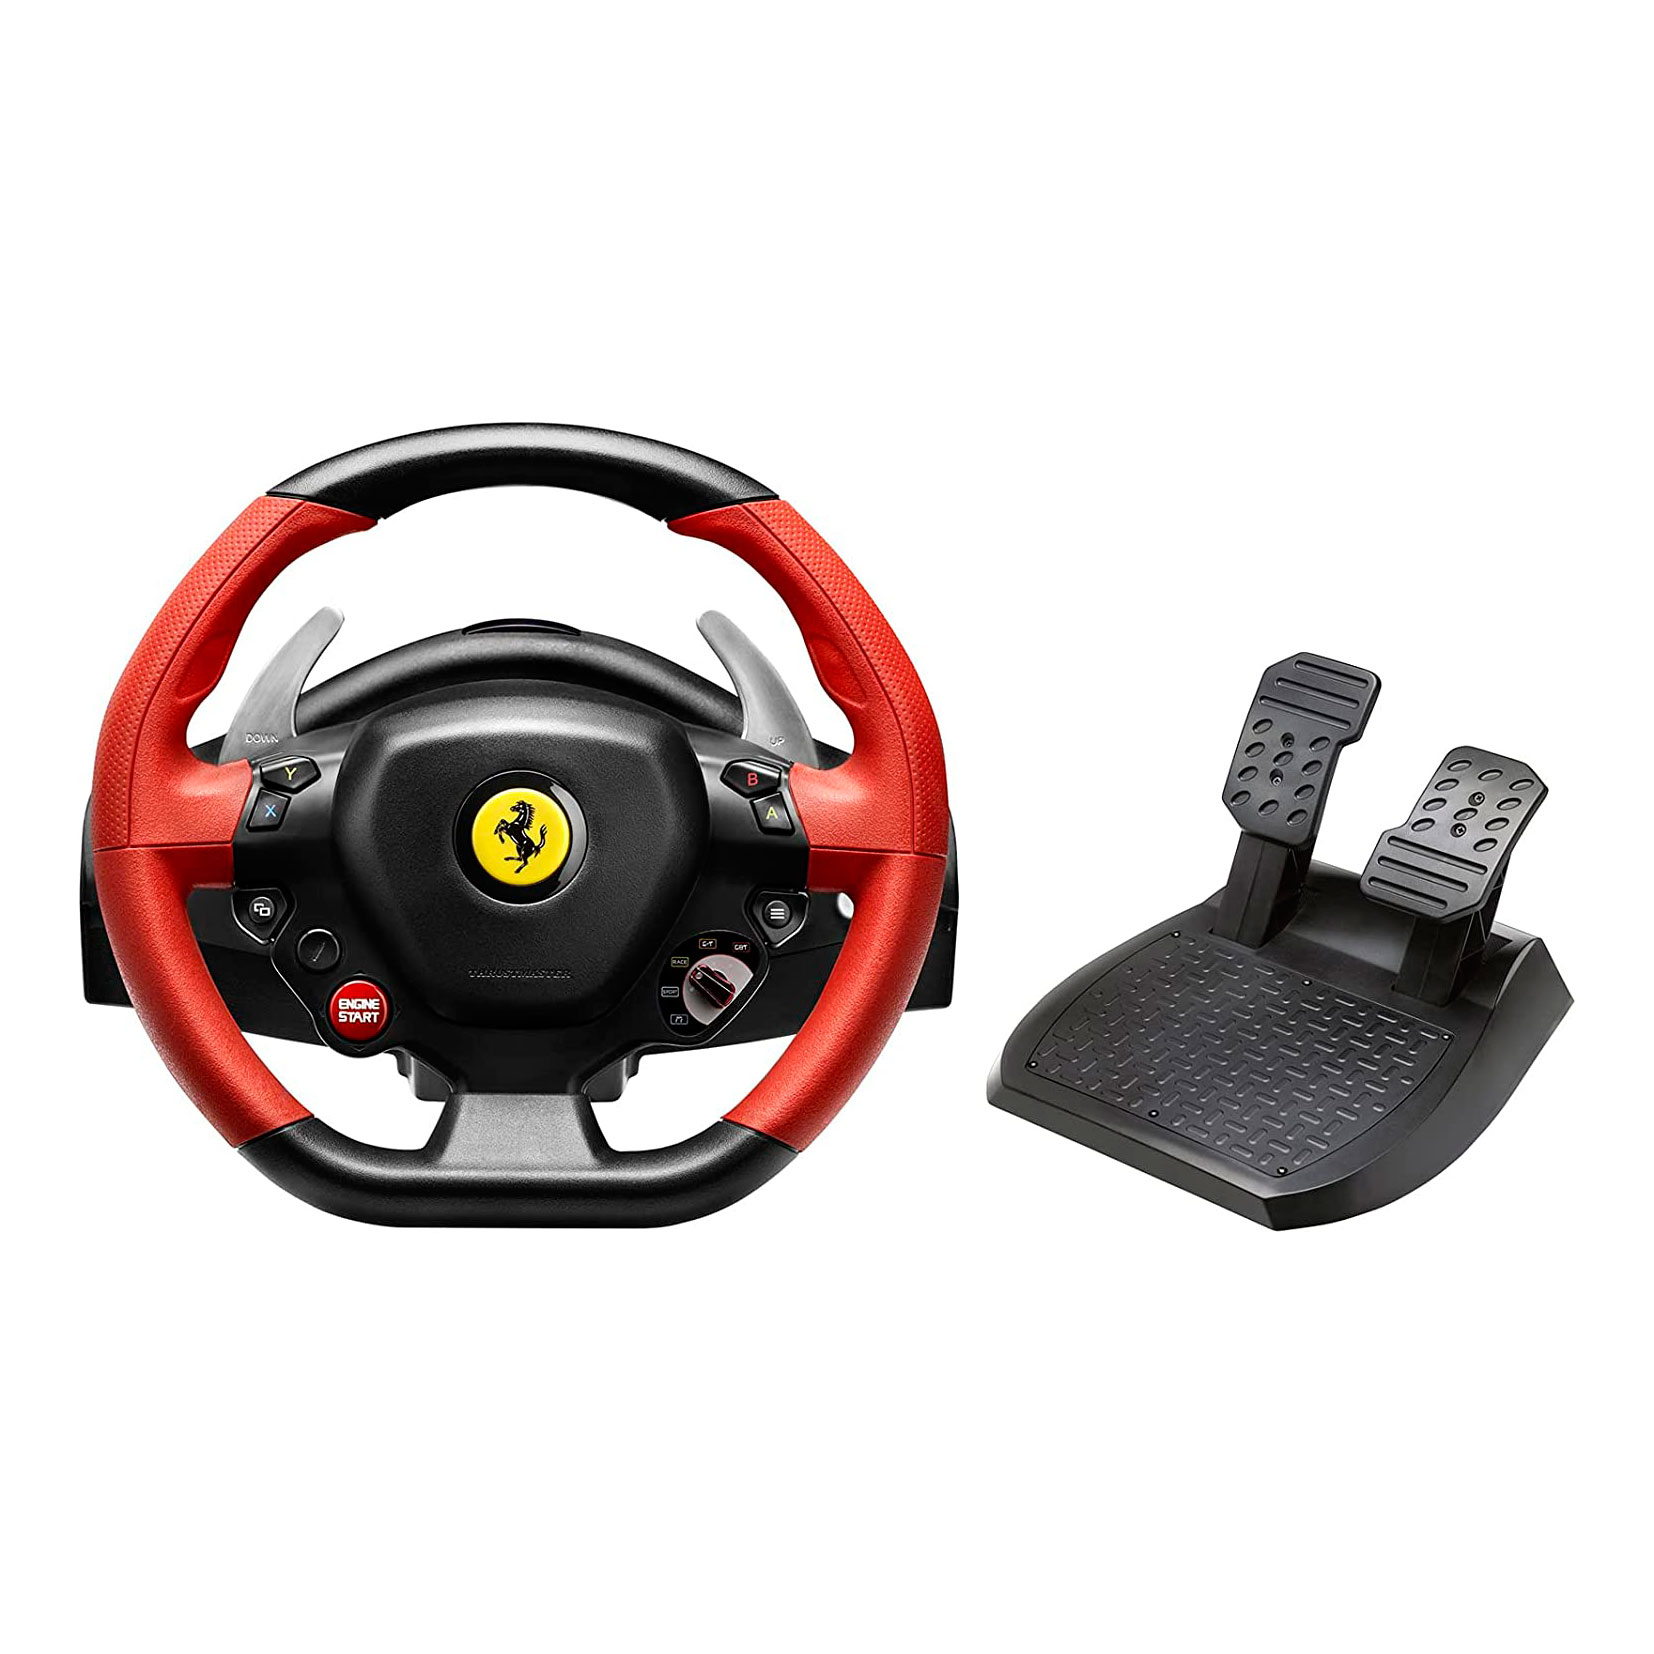 Руль Thrustmaster Ferrari 458 Spider Racing Wheel, черный/красный адаптер ступицы рулевого колеса для mitsubishi комплект boss базовый адаптер для гоночного рулевого колеса